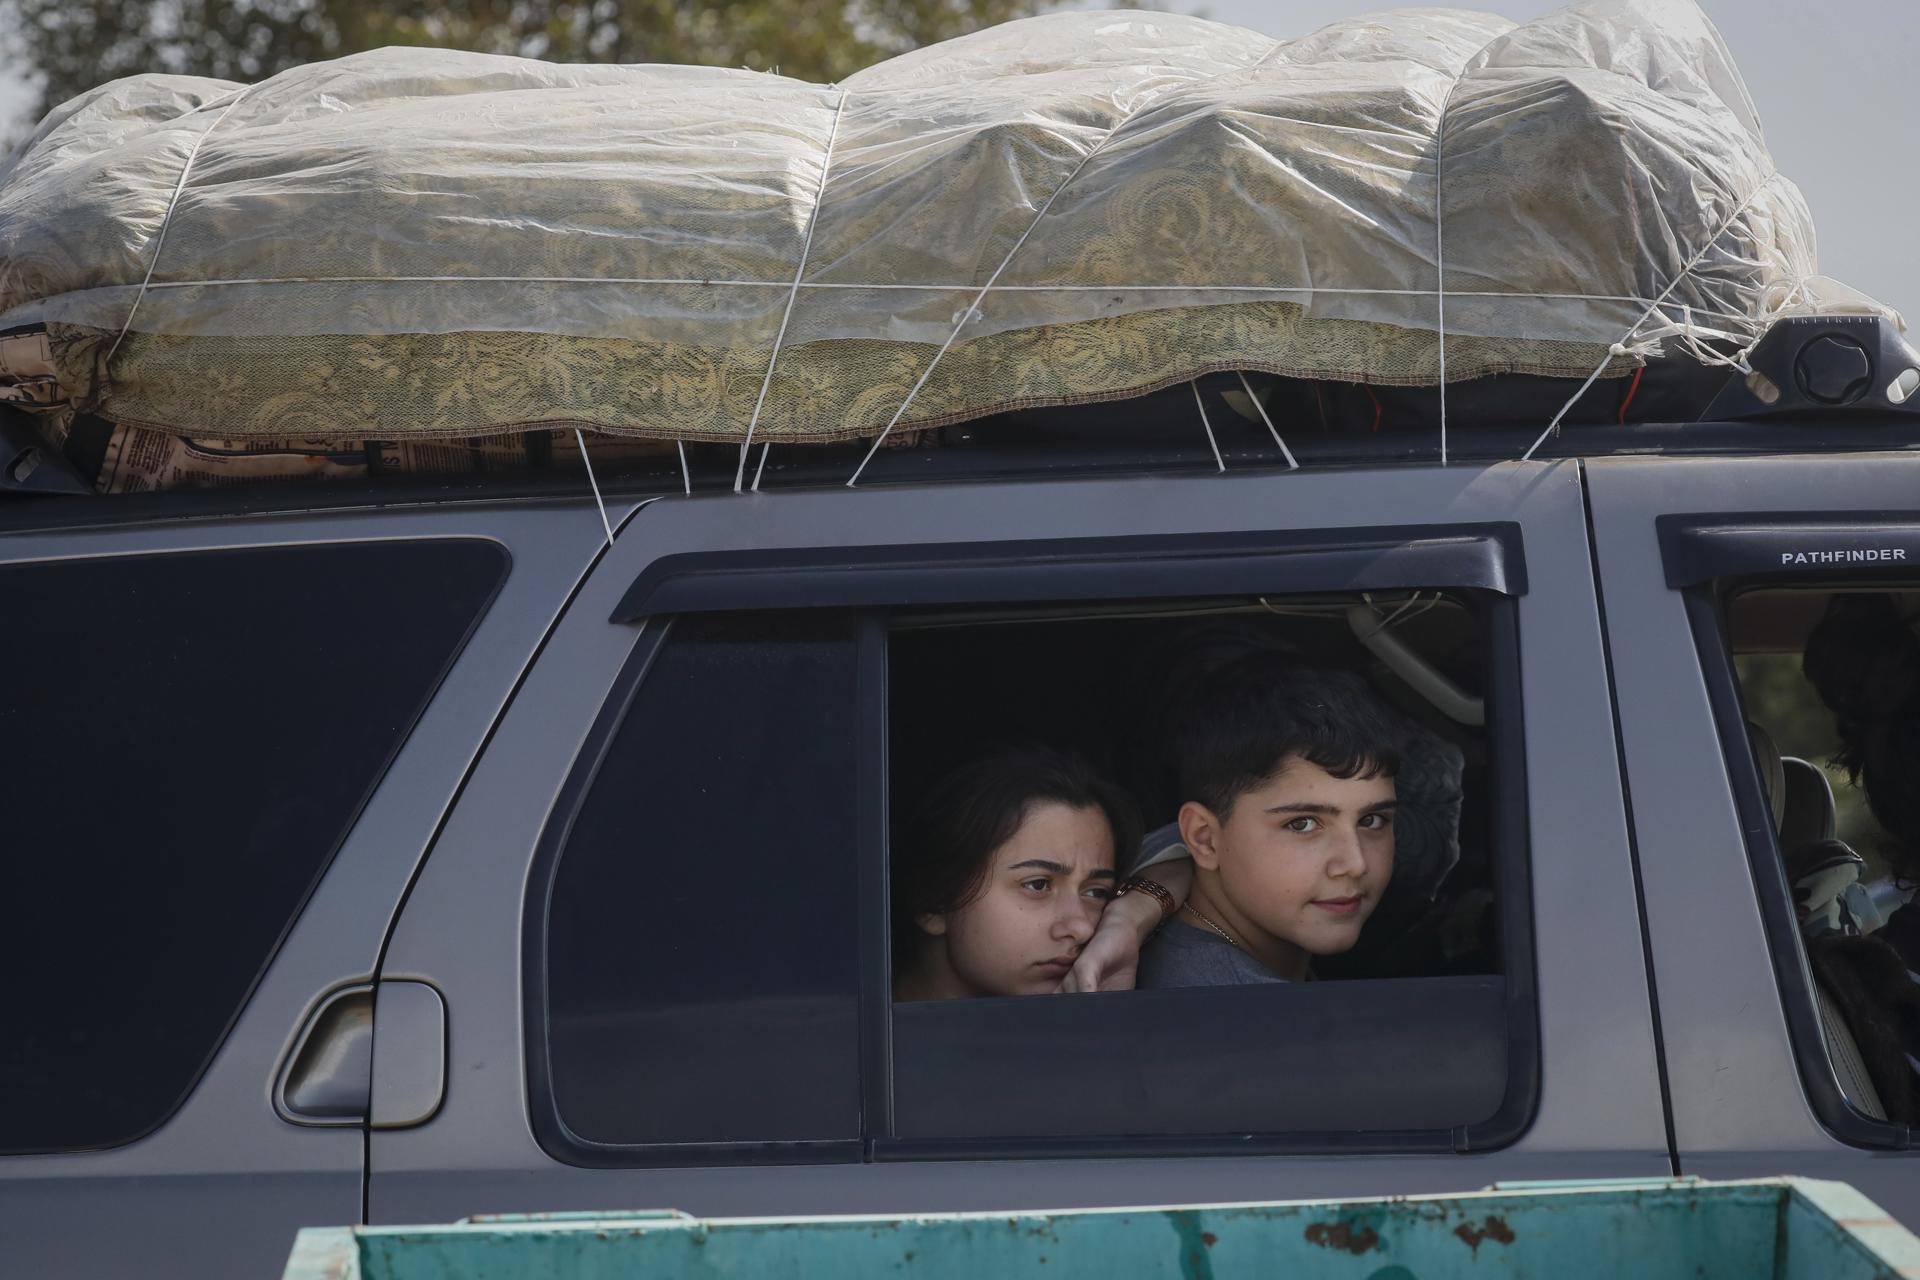 Armenia acoge ya a unos 93.000 refugiados desde el domingo pasado, lo que supone casi el 80 % de la población de Nagorno Karabaj, territorio separatista azerbaiyano habitado por armenios que será reintegrado en el sistema legal y administrativo de Azerbaiyán tras la operación militar azerí de la semana pasada. EFE/EPA/Anatoly Maltsev